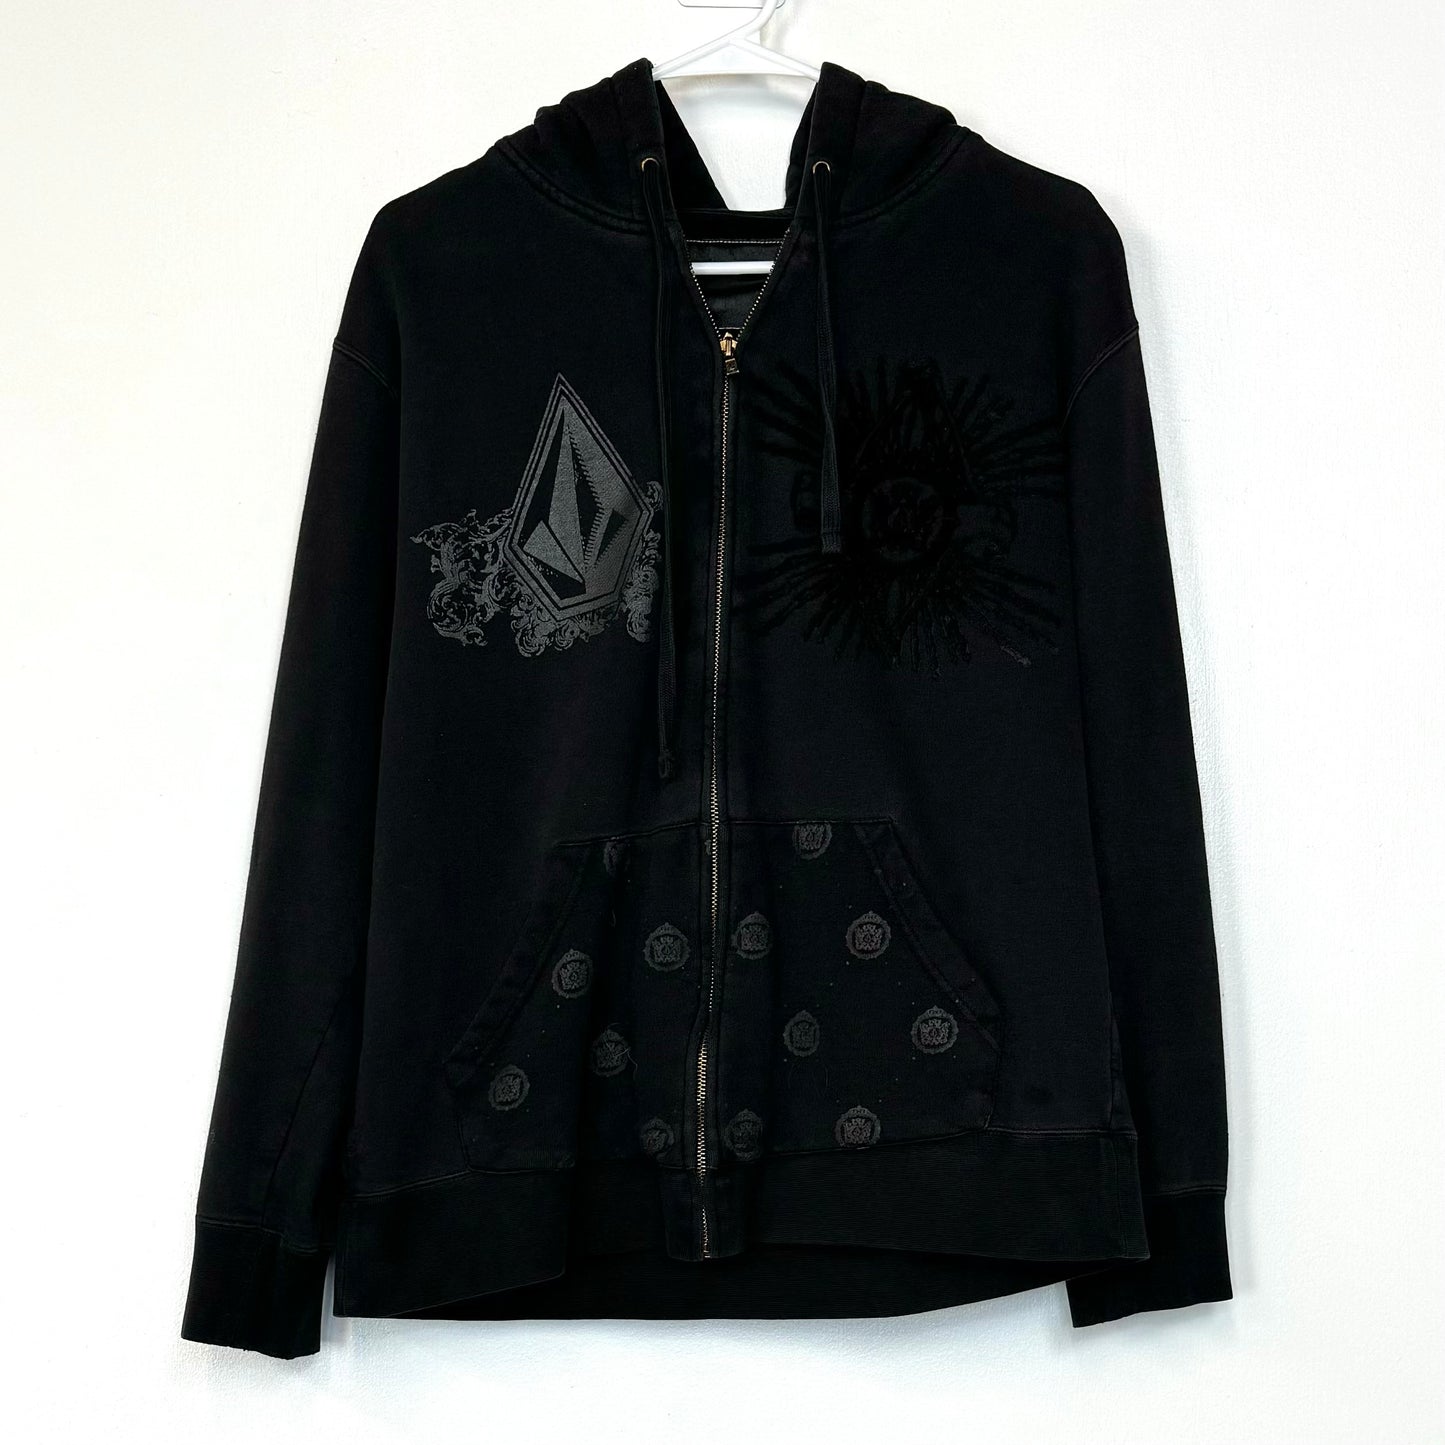 Volcom | Velvet Logo Hooded Full-Zip Sweatshirt | Color: Black | Size: M | Pre-Owned/Vintage